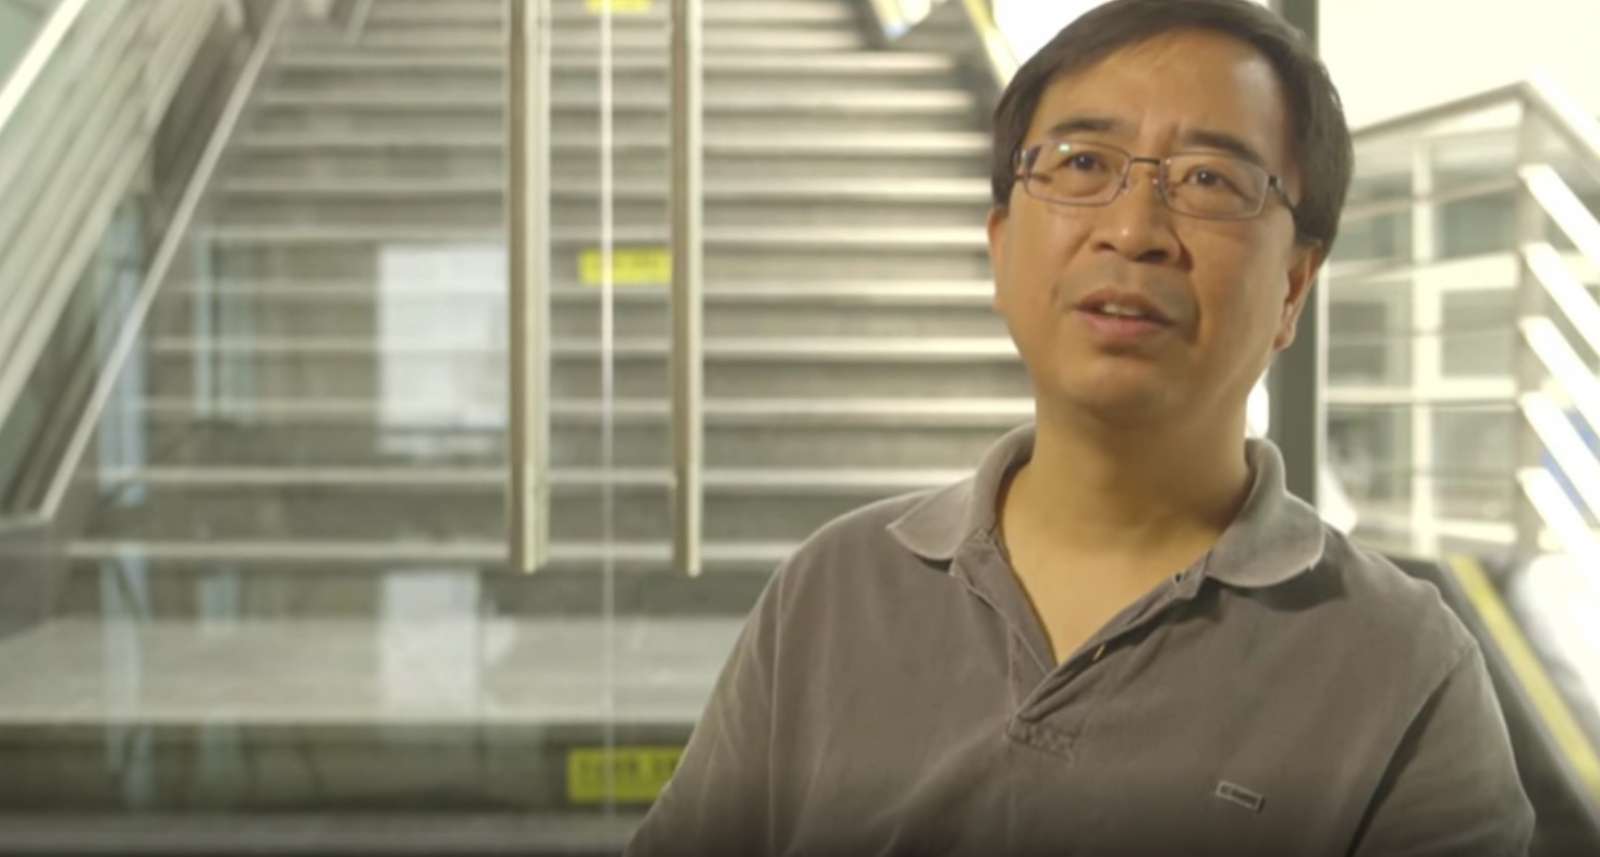 चीनी वैज्ञानिकों का दावा, गूगल के प्रोटोटाइप से 10 अरब गुना तेज क्वांटम कम्प्यूटर बनाया